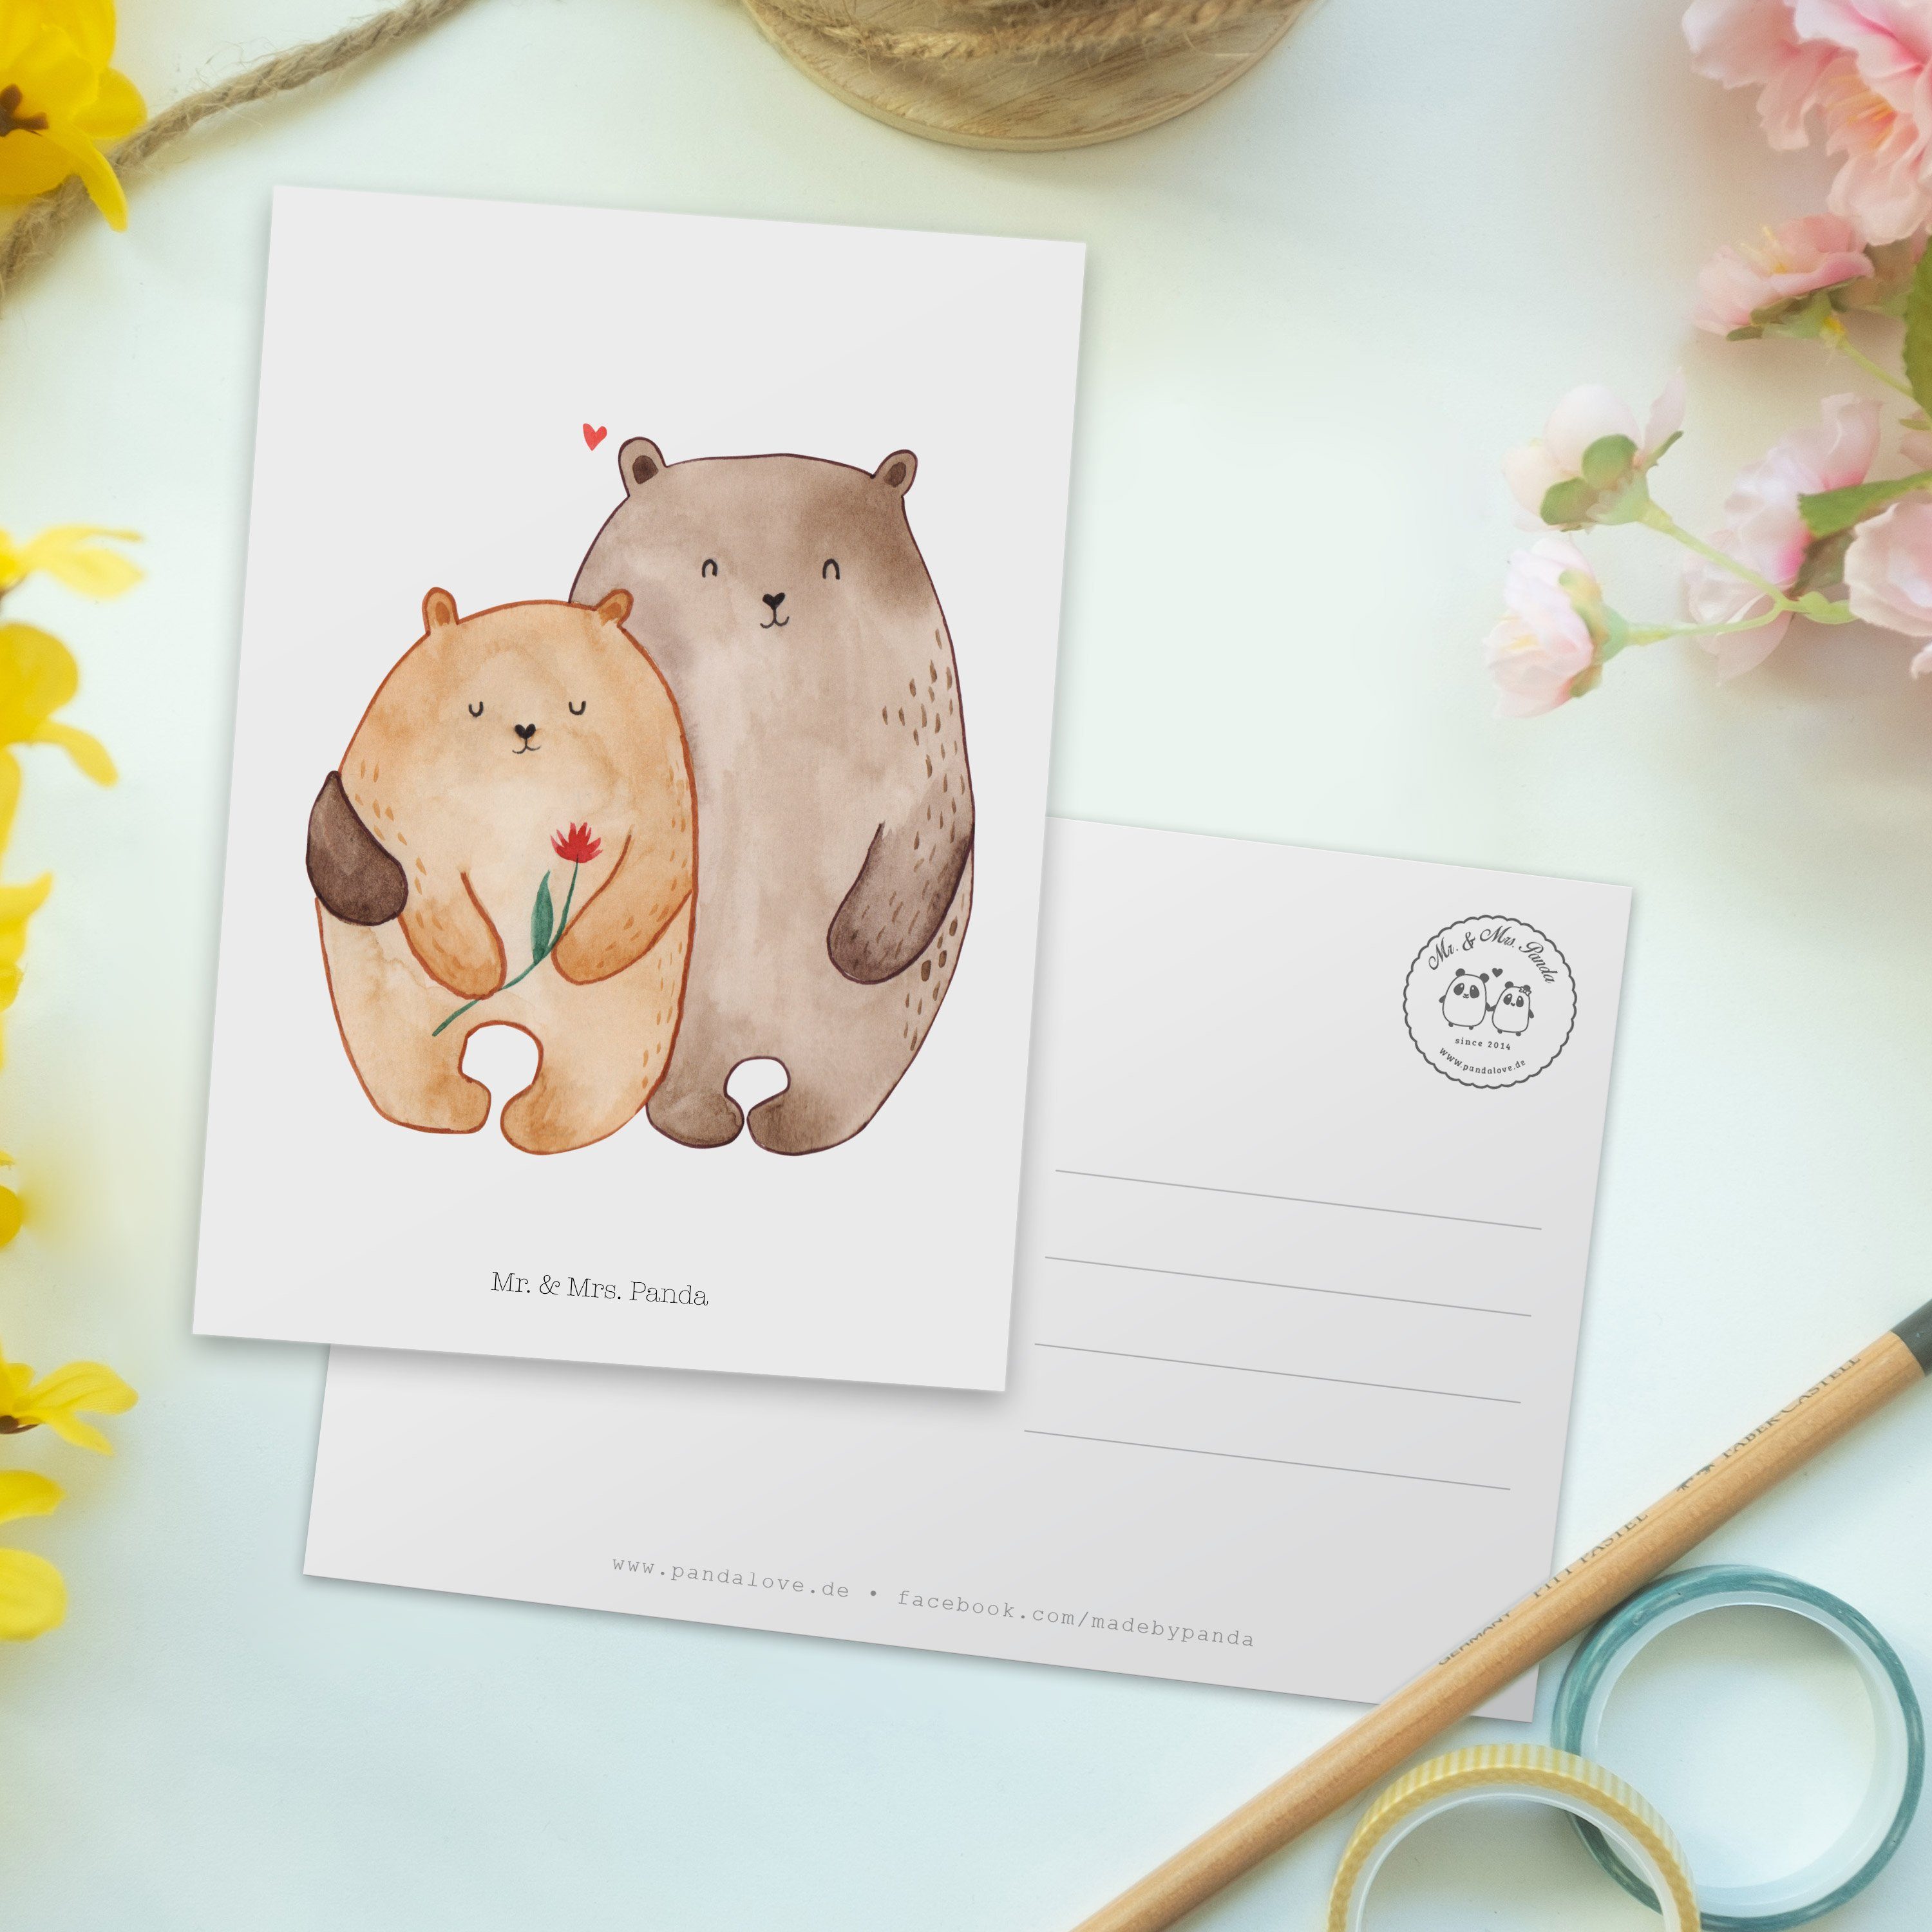 Mr. & Mrs. Panda Postkarte Bären Geschenk, - Freundin, Weiß Kar Liebe Umarmung, Heiratsantrag, 